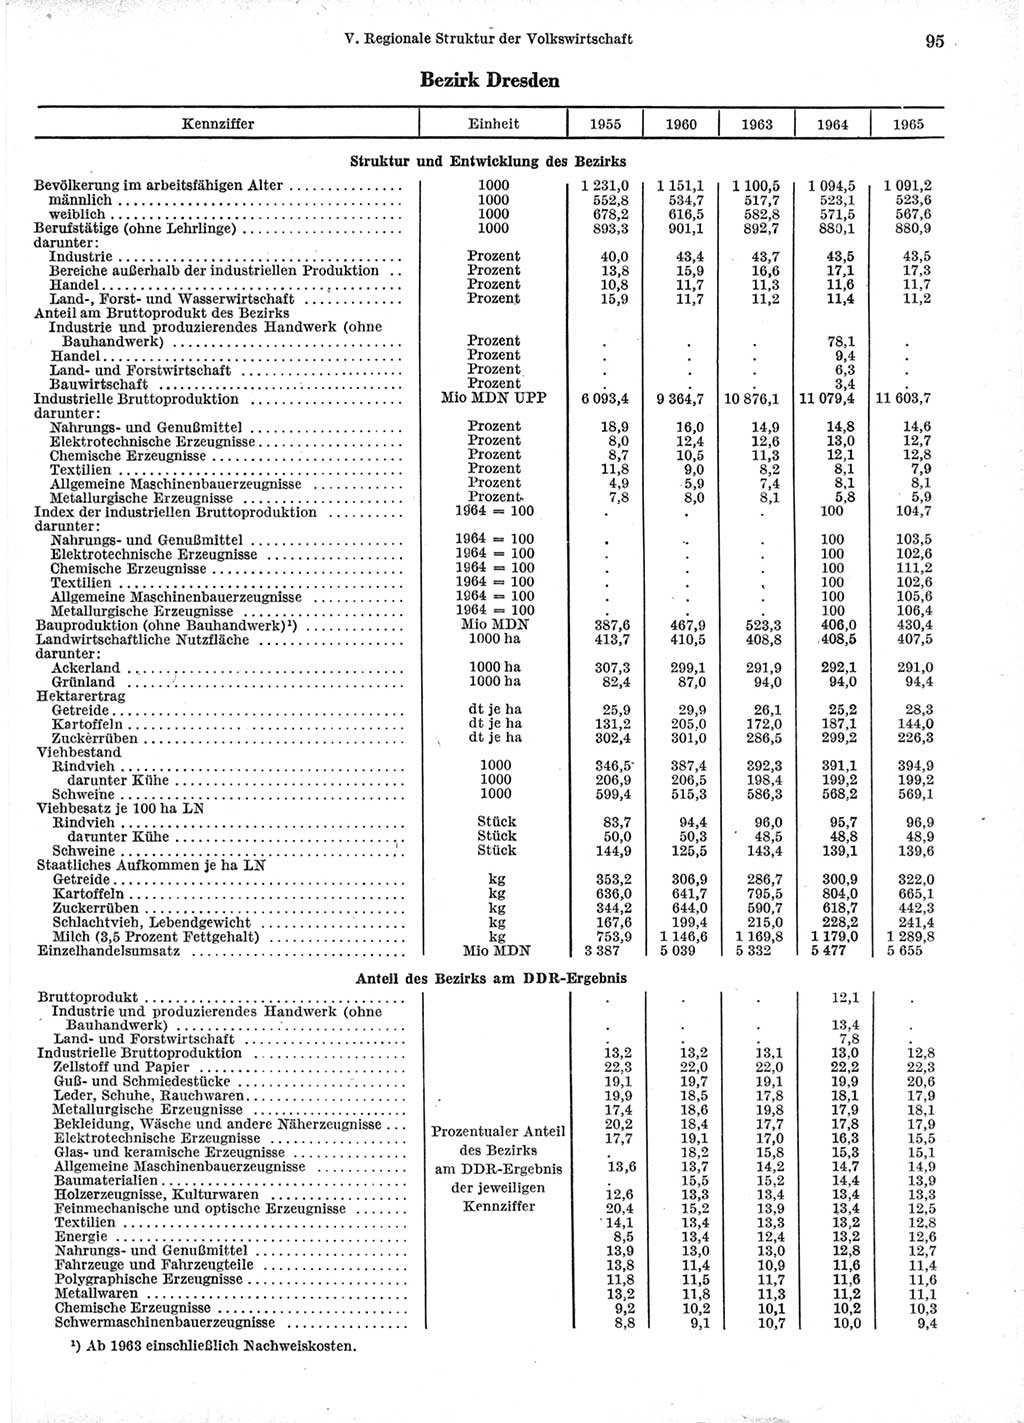 Statistisches Jahrbuch der Deutschen Demokratischen Republik (DDR) 1966, Seite 95 (Stat. Jb. DDR 1966, S. 95)